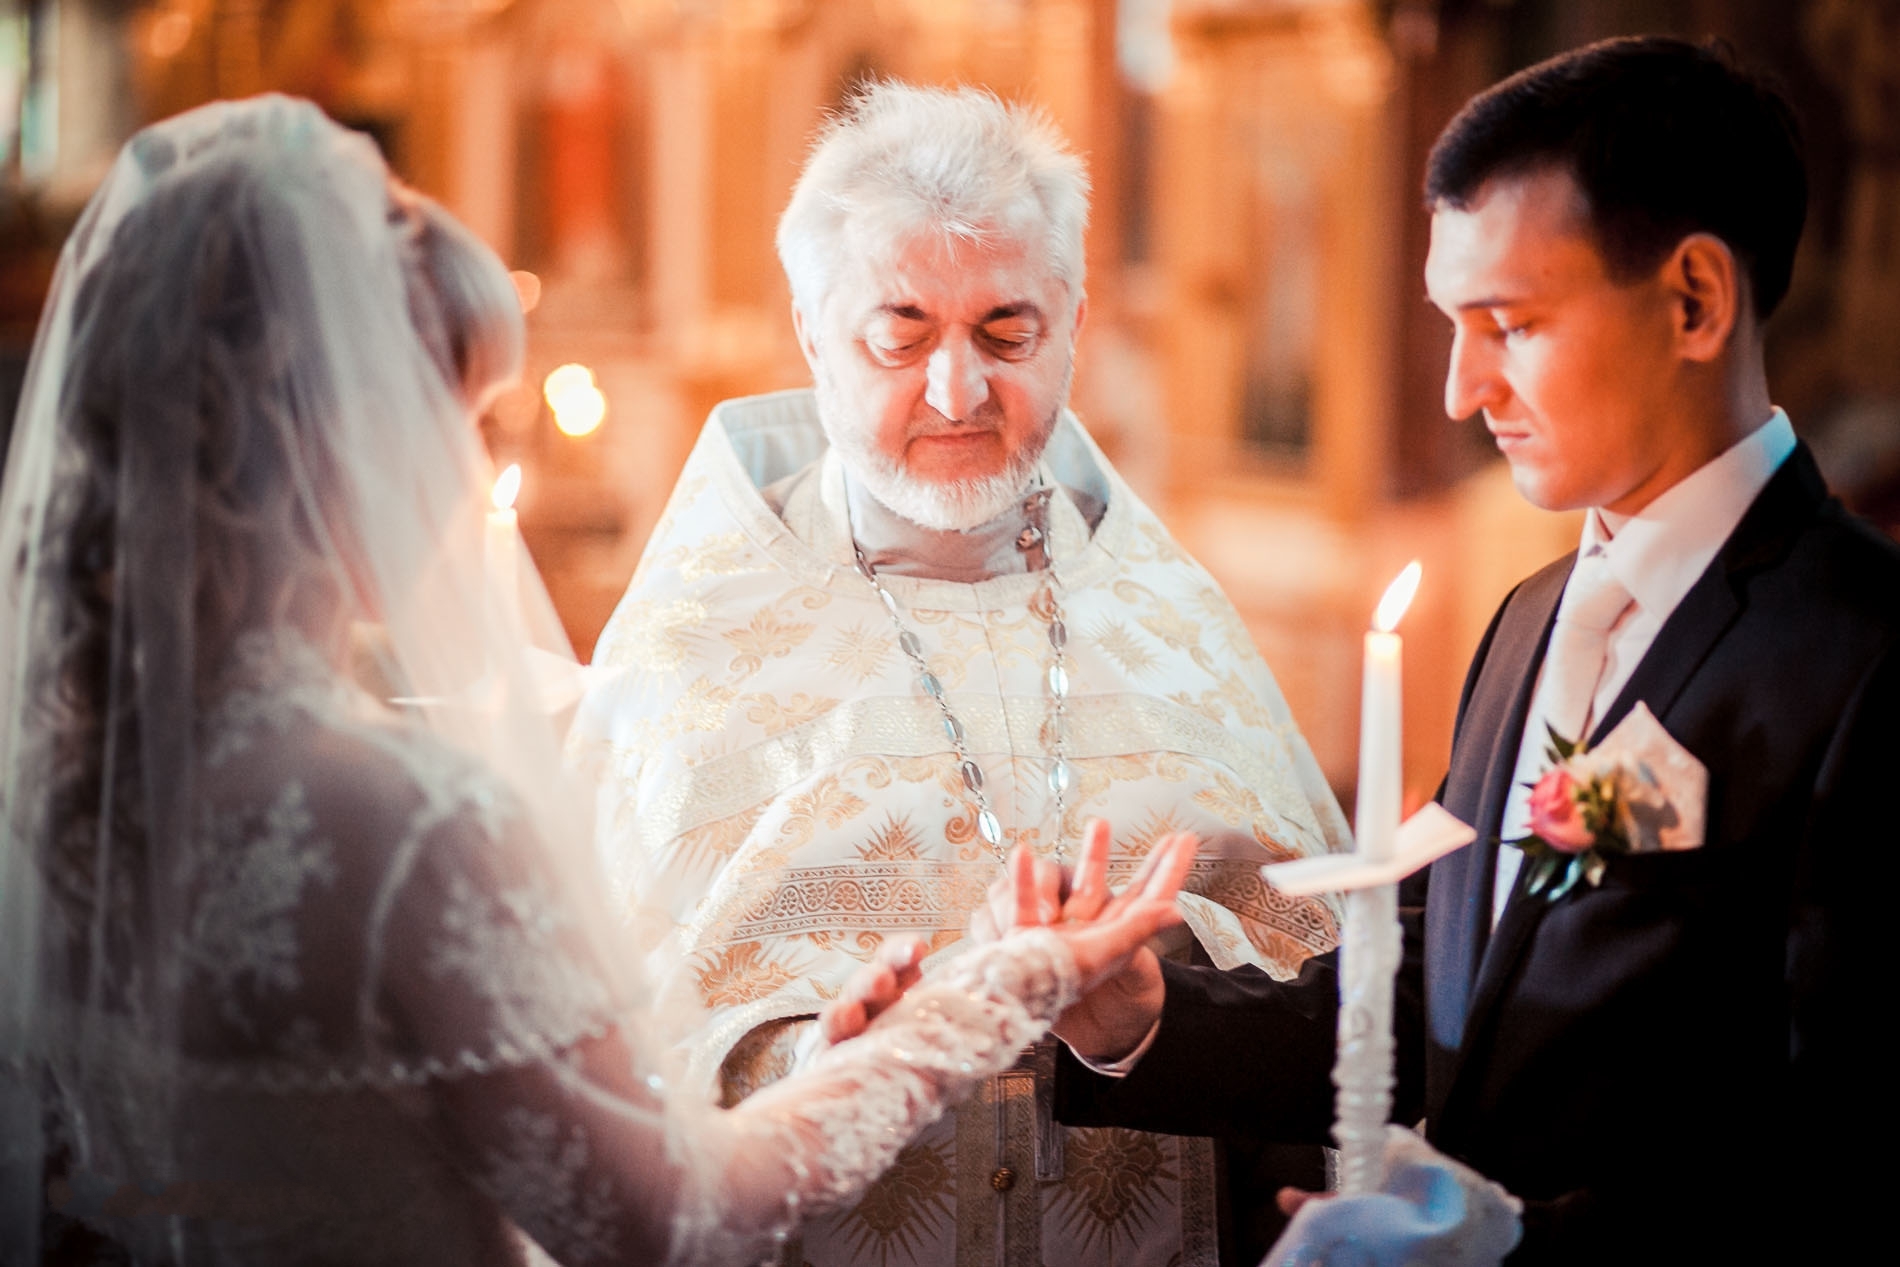 Венчание в церкви время. Церемония в церкви. Свадьба венчание. Свадьба в храме. Фотосессия венчания в церкви.